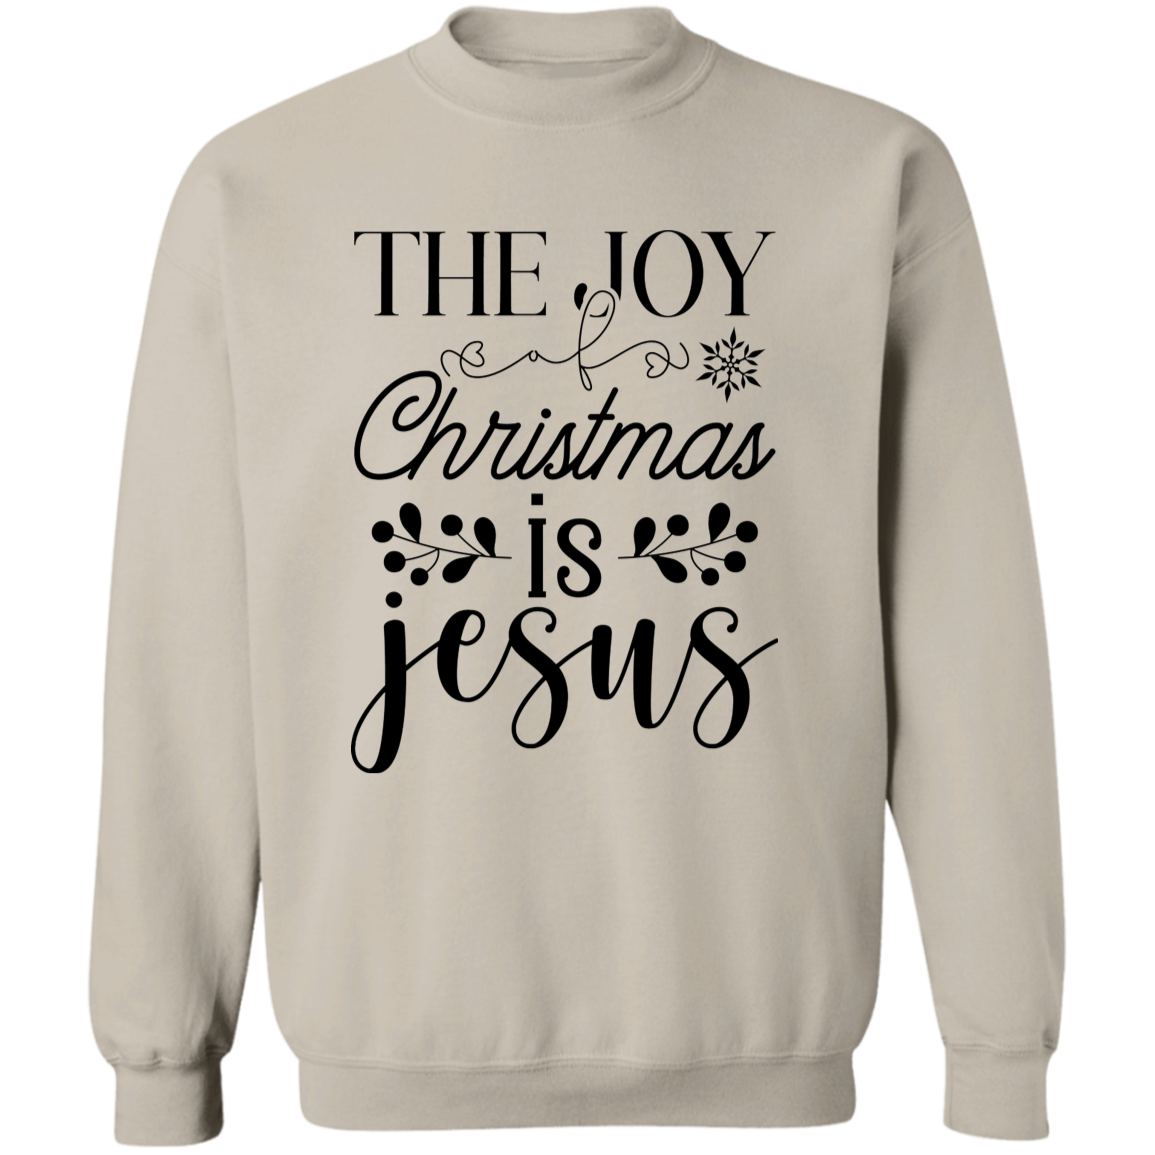 THE JOY OF CHRISTMAS IS JESUS SWEATSHIRT, Christian Christmas sweater, Jesus sweatshirt